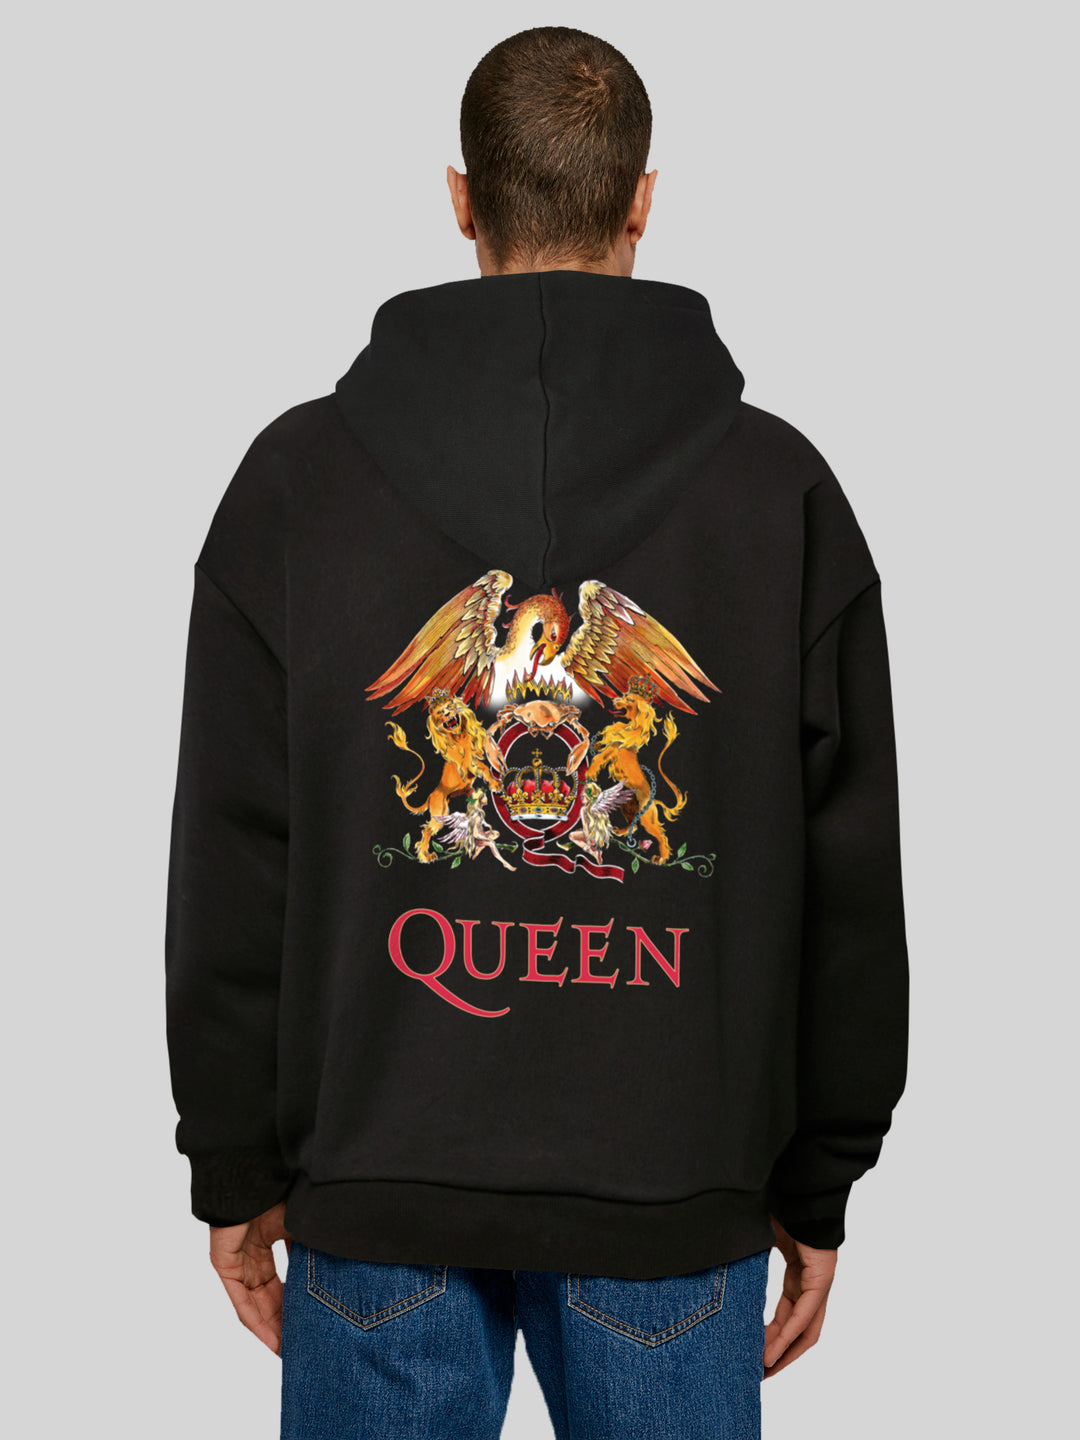 Queen Hoodie | Classic Crest Black and Queen Hoodie | Premium Oversize Hoody